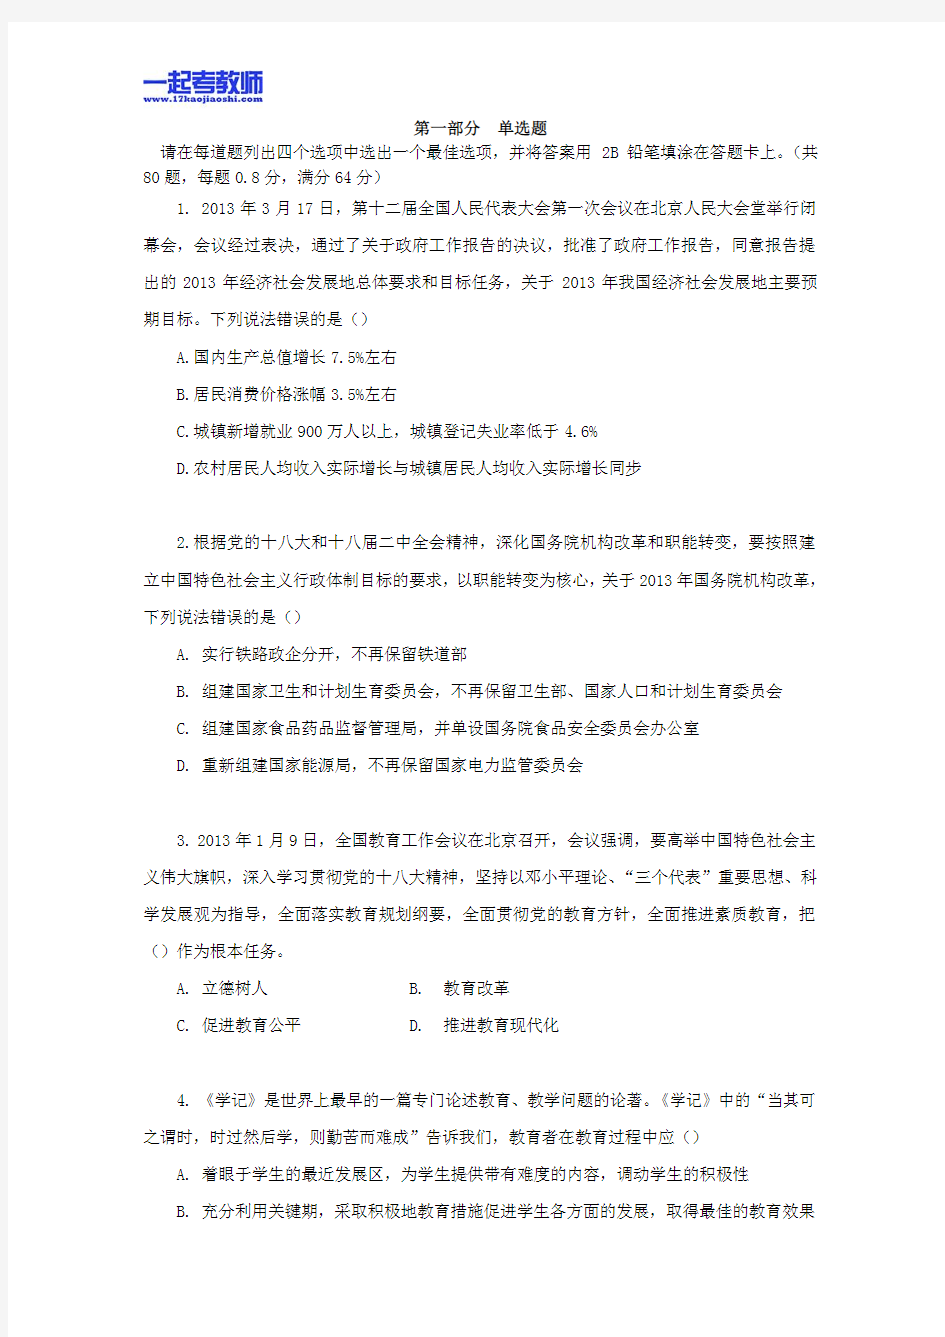 2013年广州市珠海区教师招聘考试笔试教育综合真题答案解析